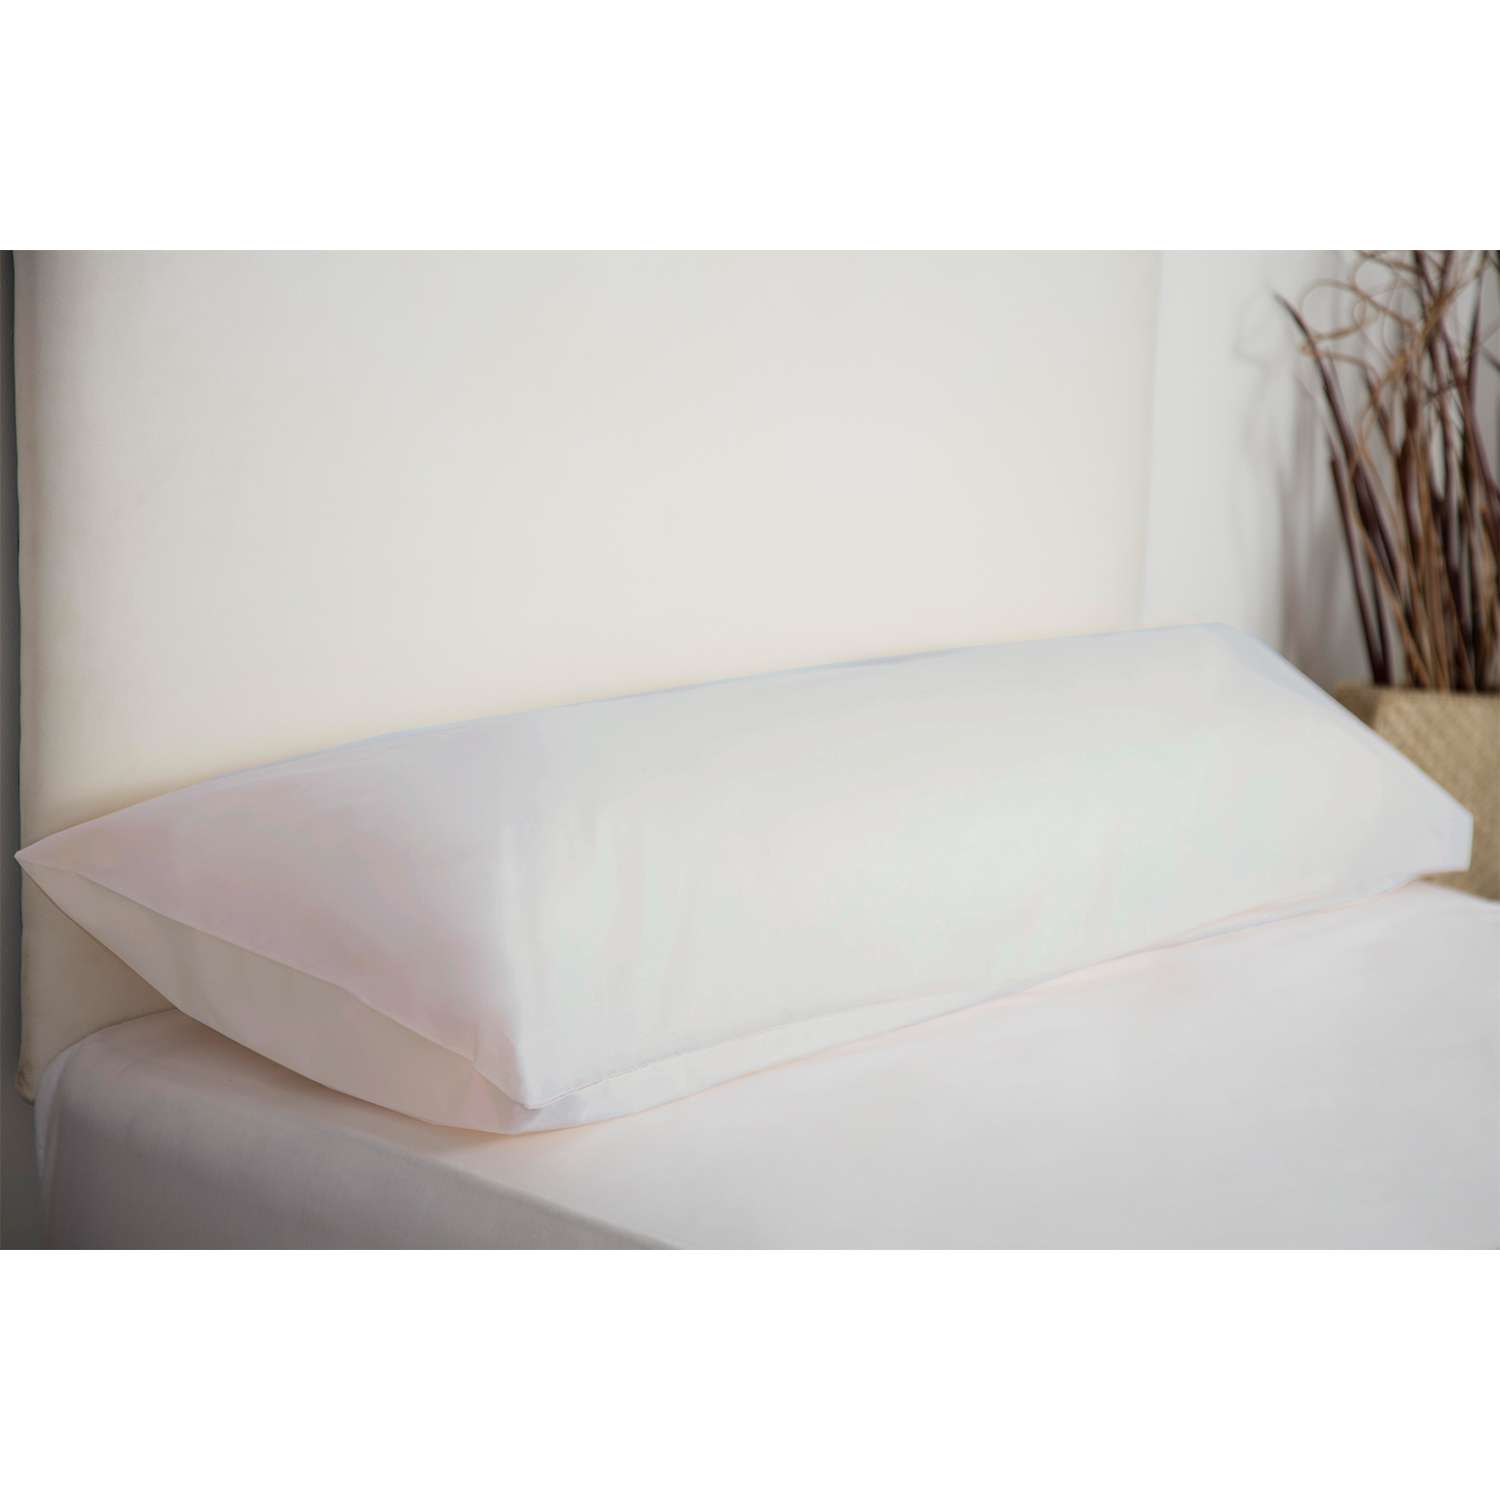 Photos - Pillowcase White Bolster Cushion